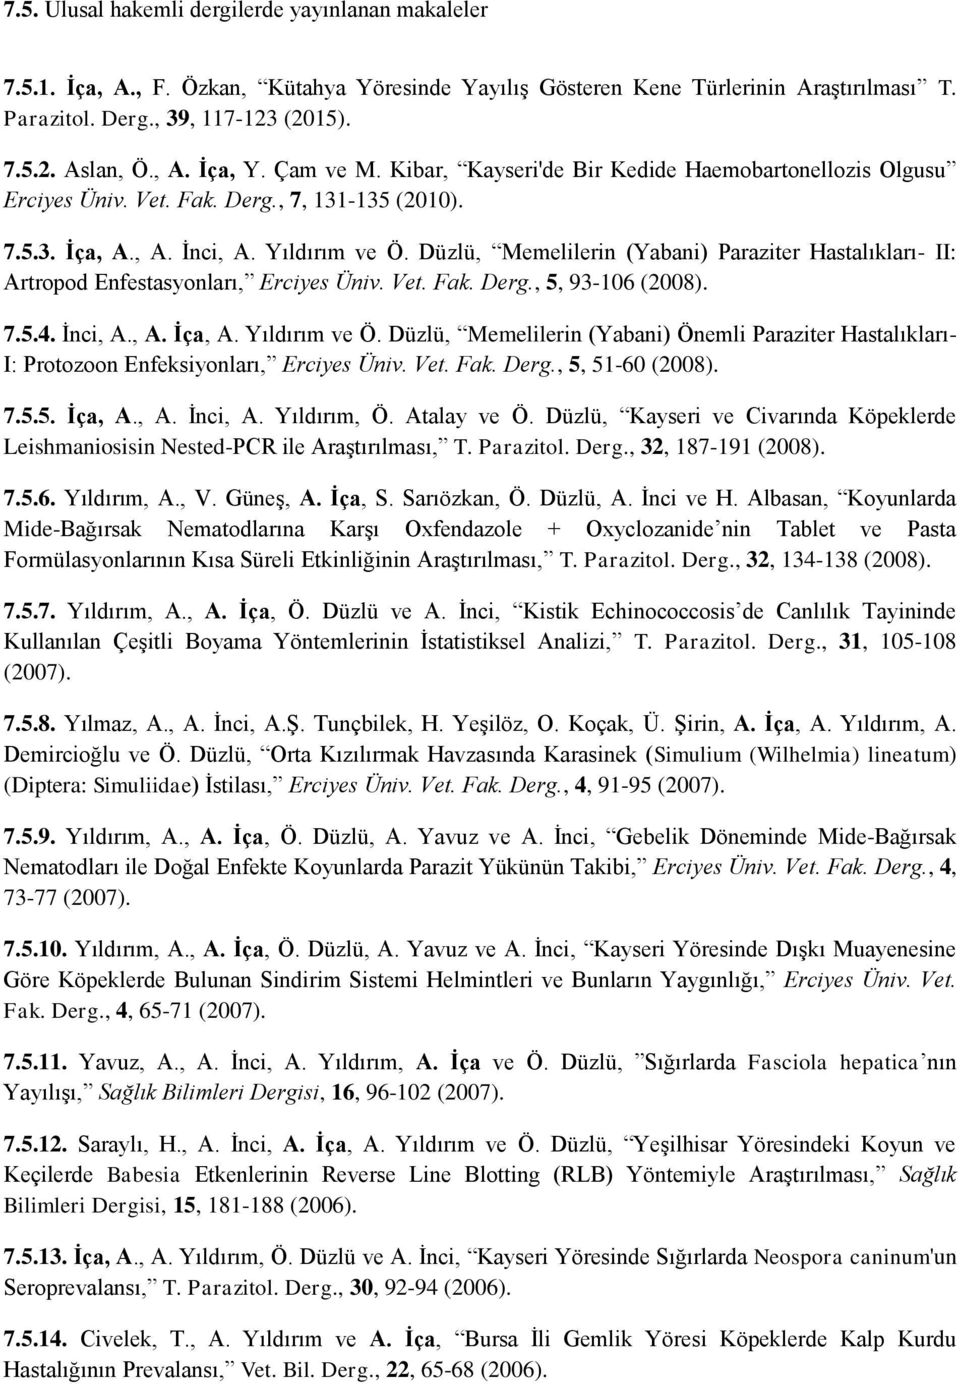 Düzlü, Memelilerin (Yabani) Paraziter Hastalıkları- II: Artropod Enfestasyonları, Erciyes Üniv. Vet. Fak. Derg., 5, 93-106 (2008). 7.5.4. İnci, A., A. İça, A. Yıldırım ve Ö.